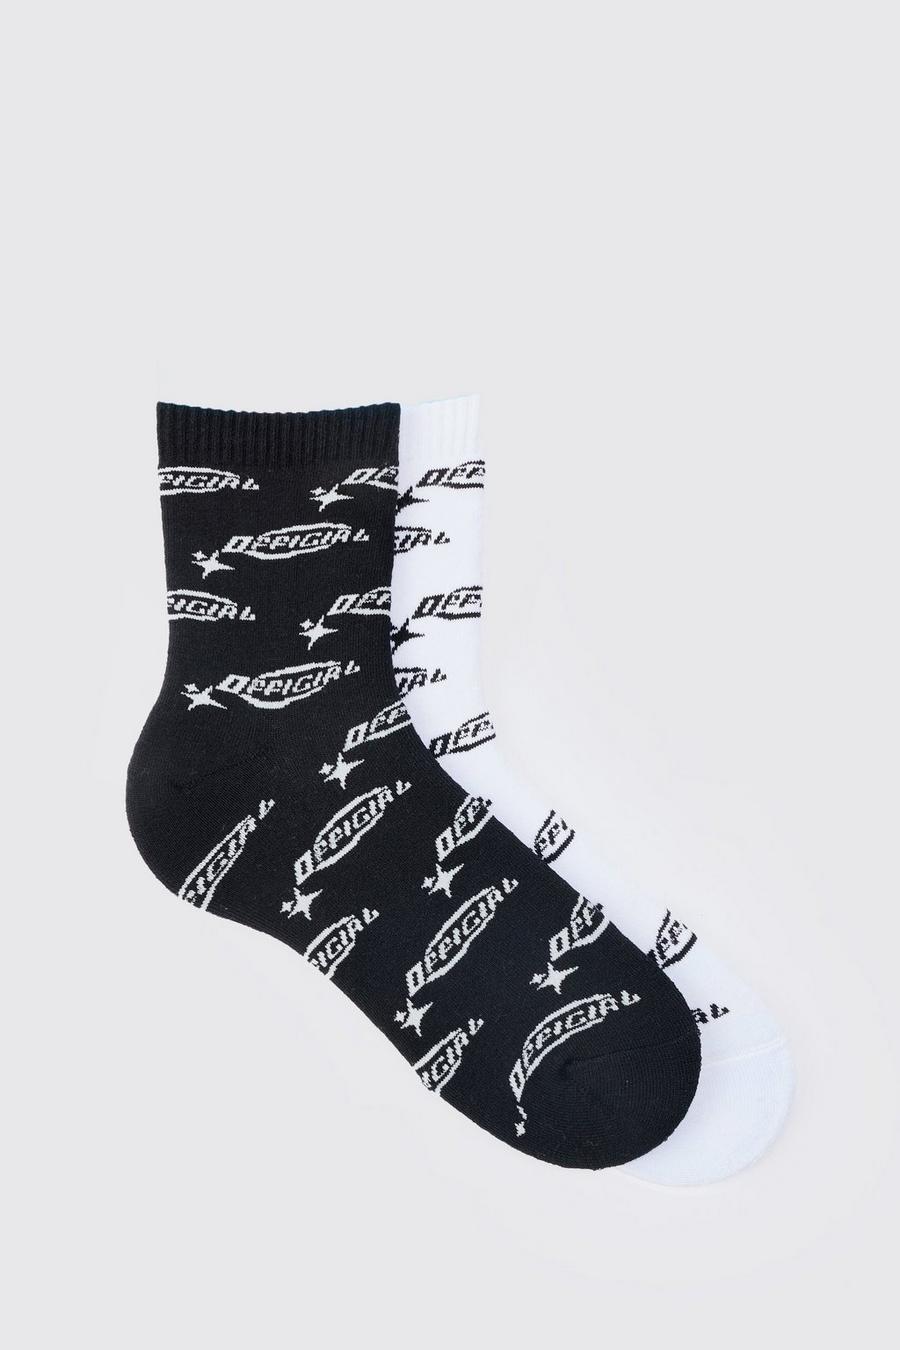 Pack de 2 pares de calcetines con estampado de logo Official, Multi